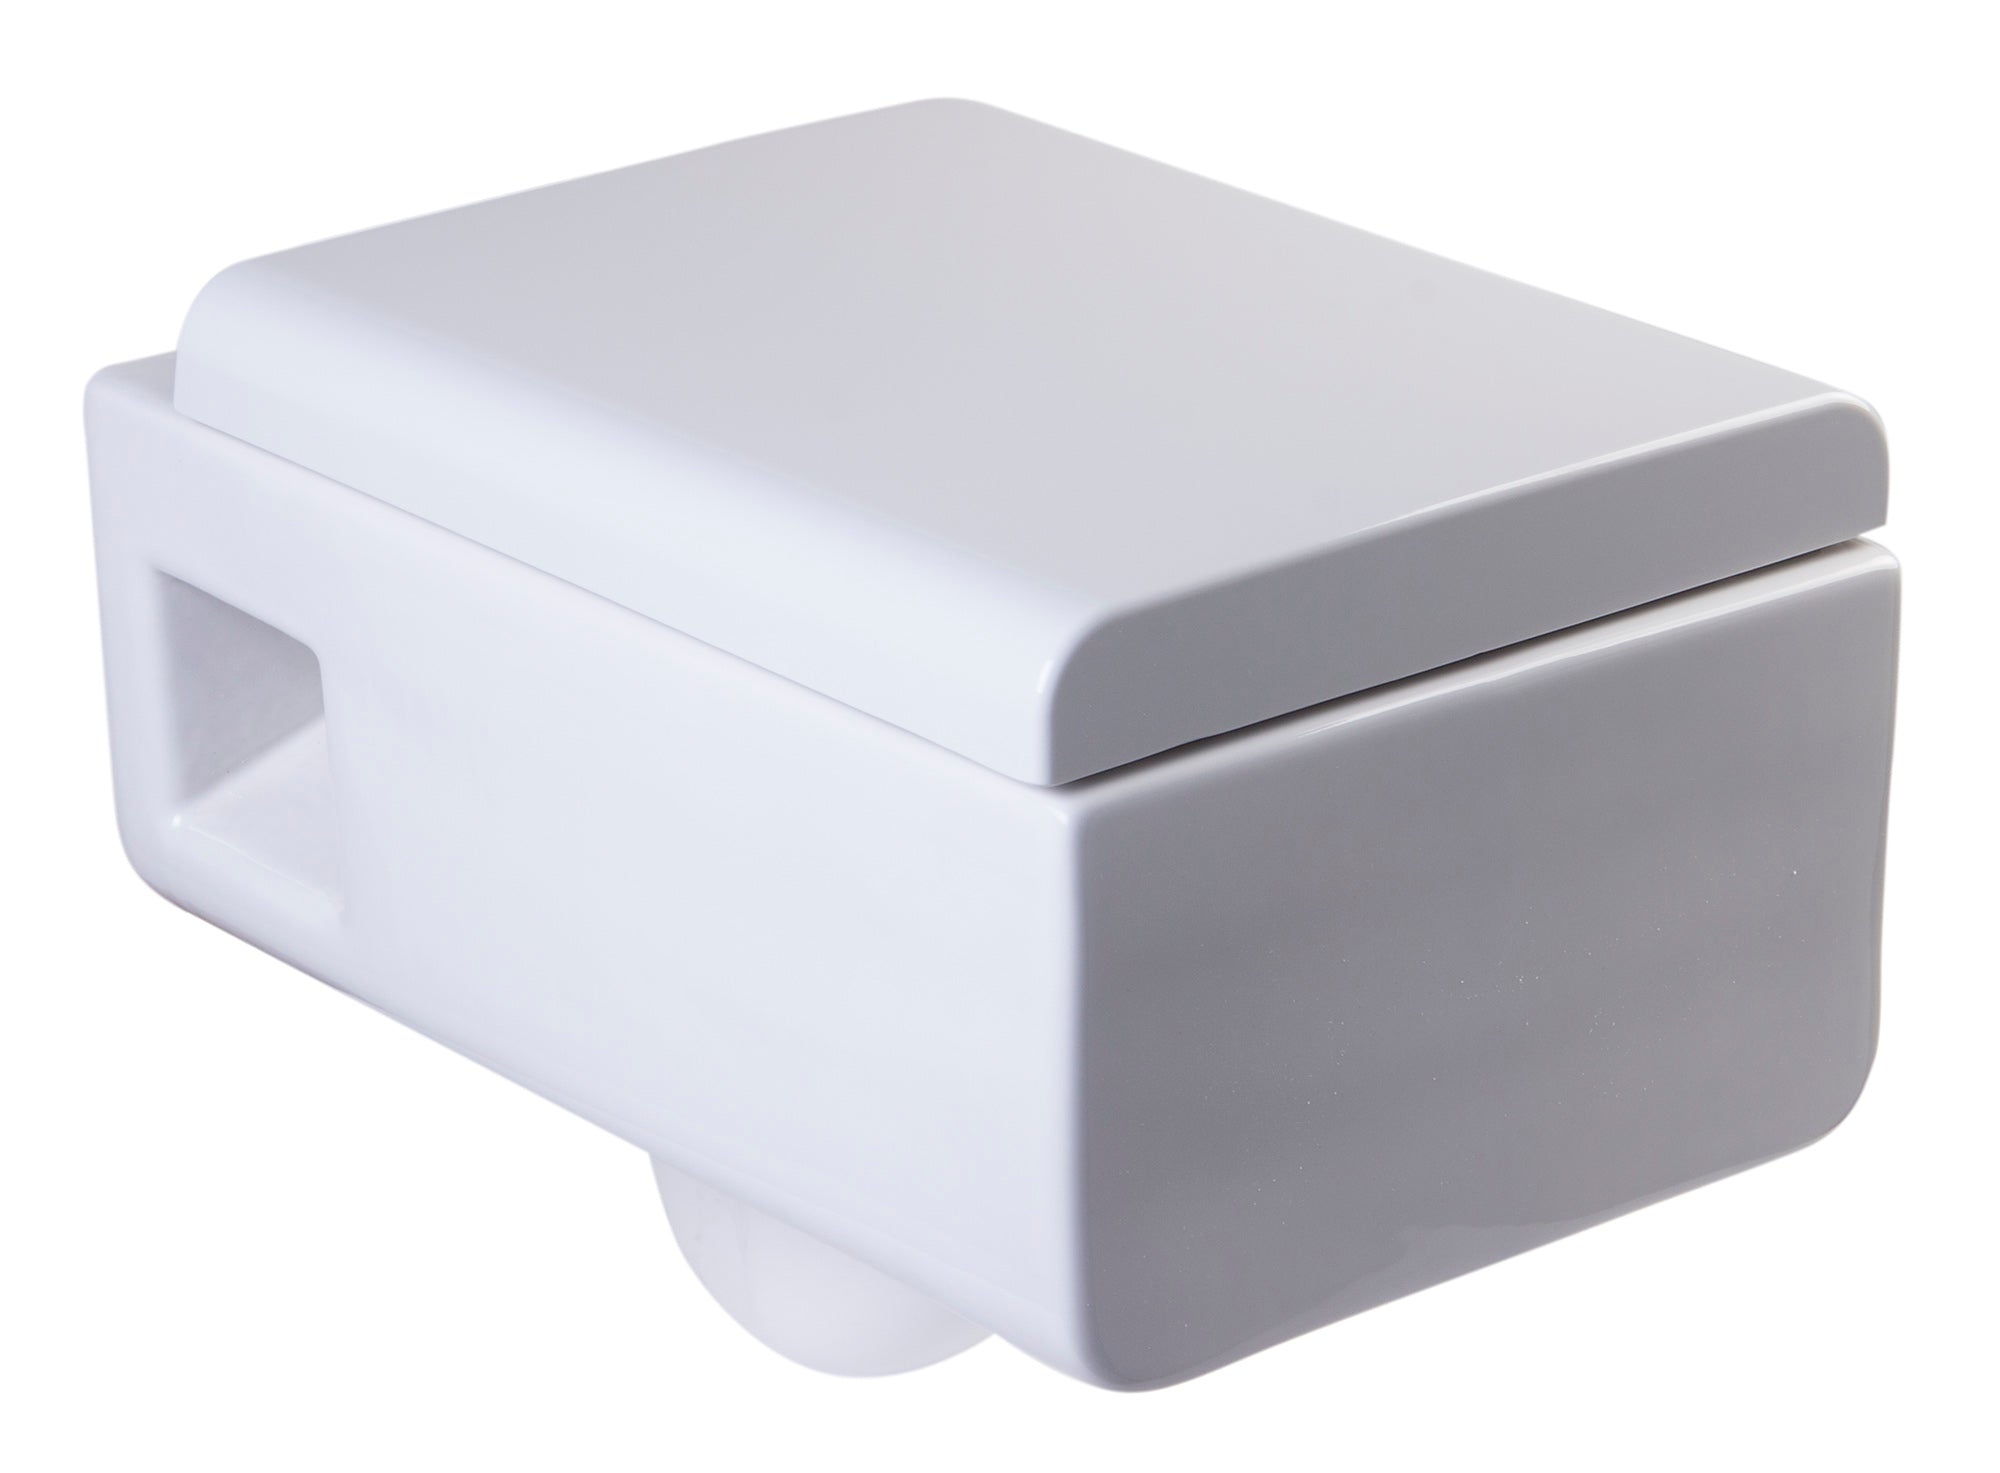 EAGO WD333 Toilet Bowl Square Modern Wall Mounted Dual-Flush White Ceramic